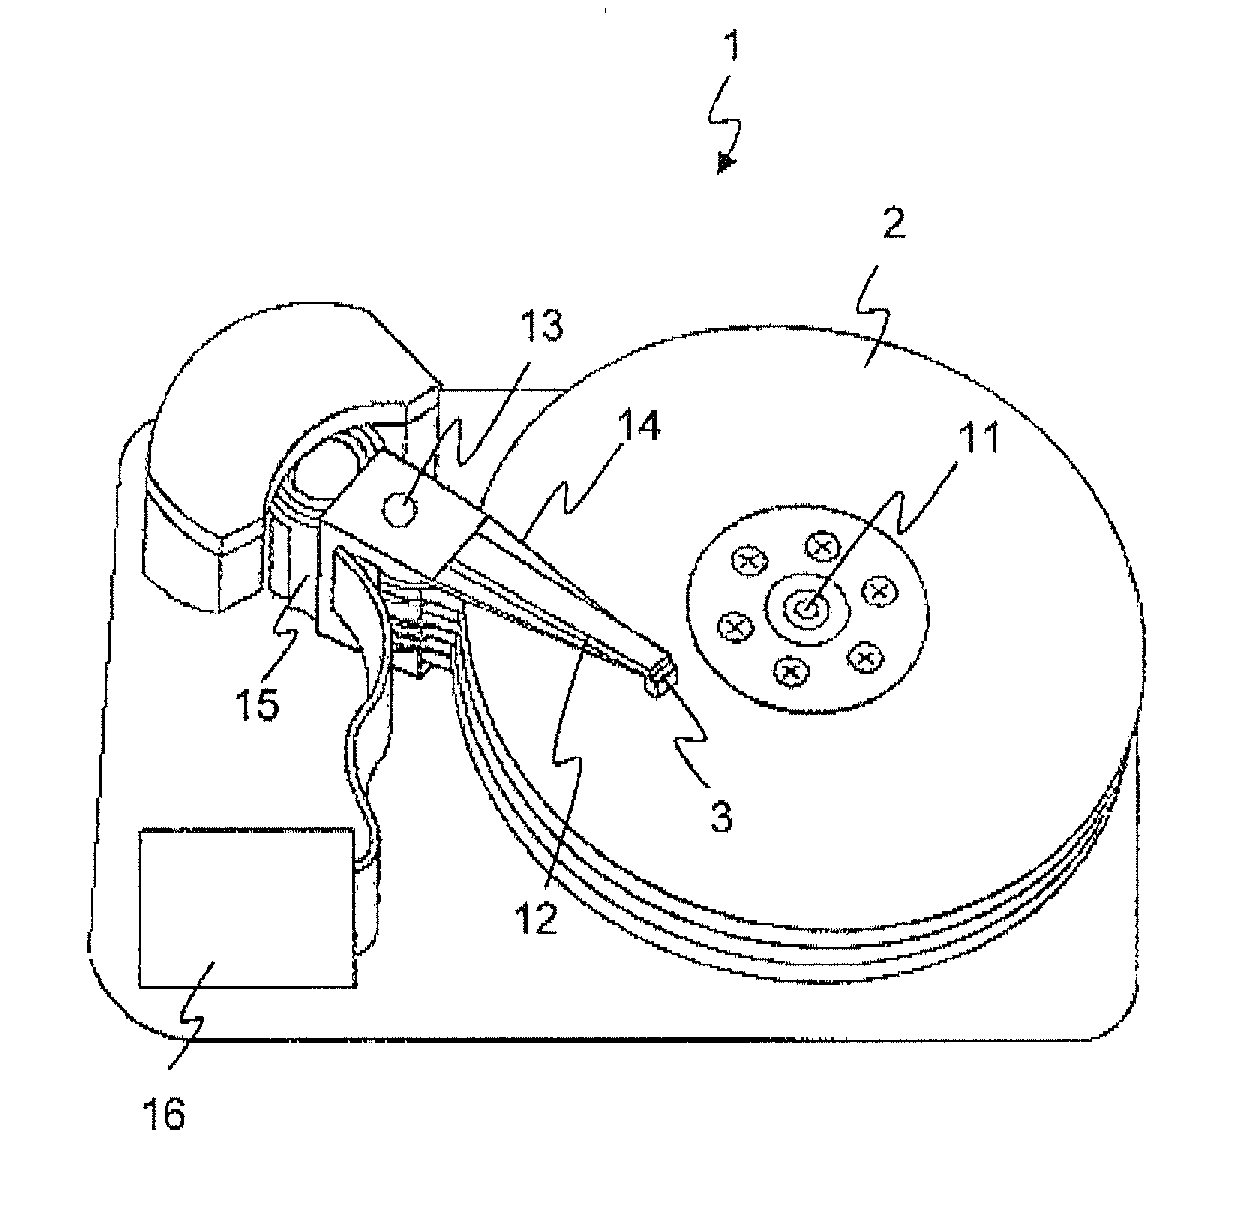 Magnetic recording apparatus